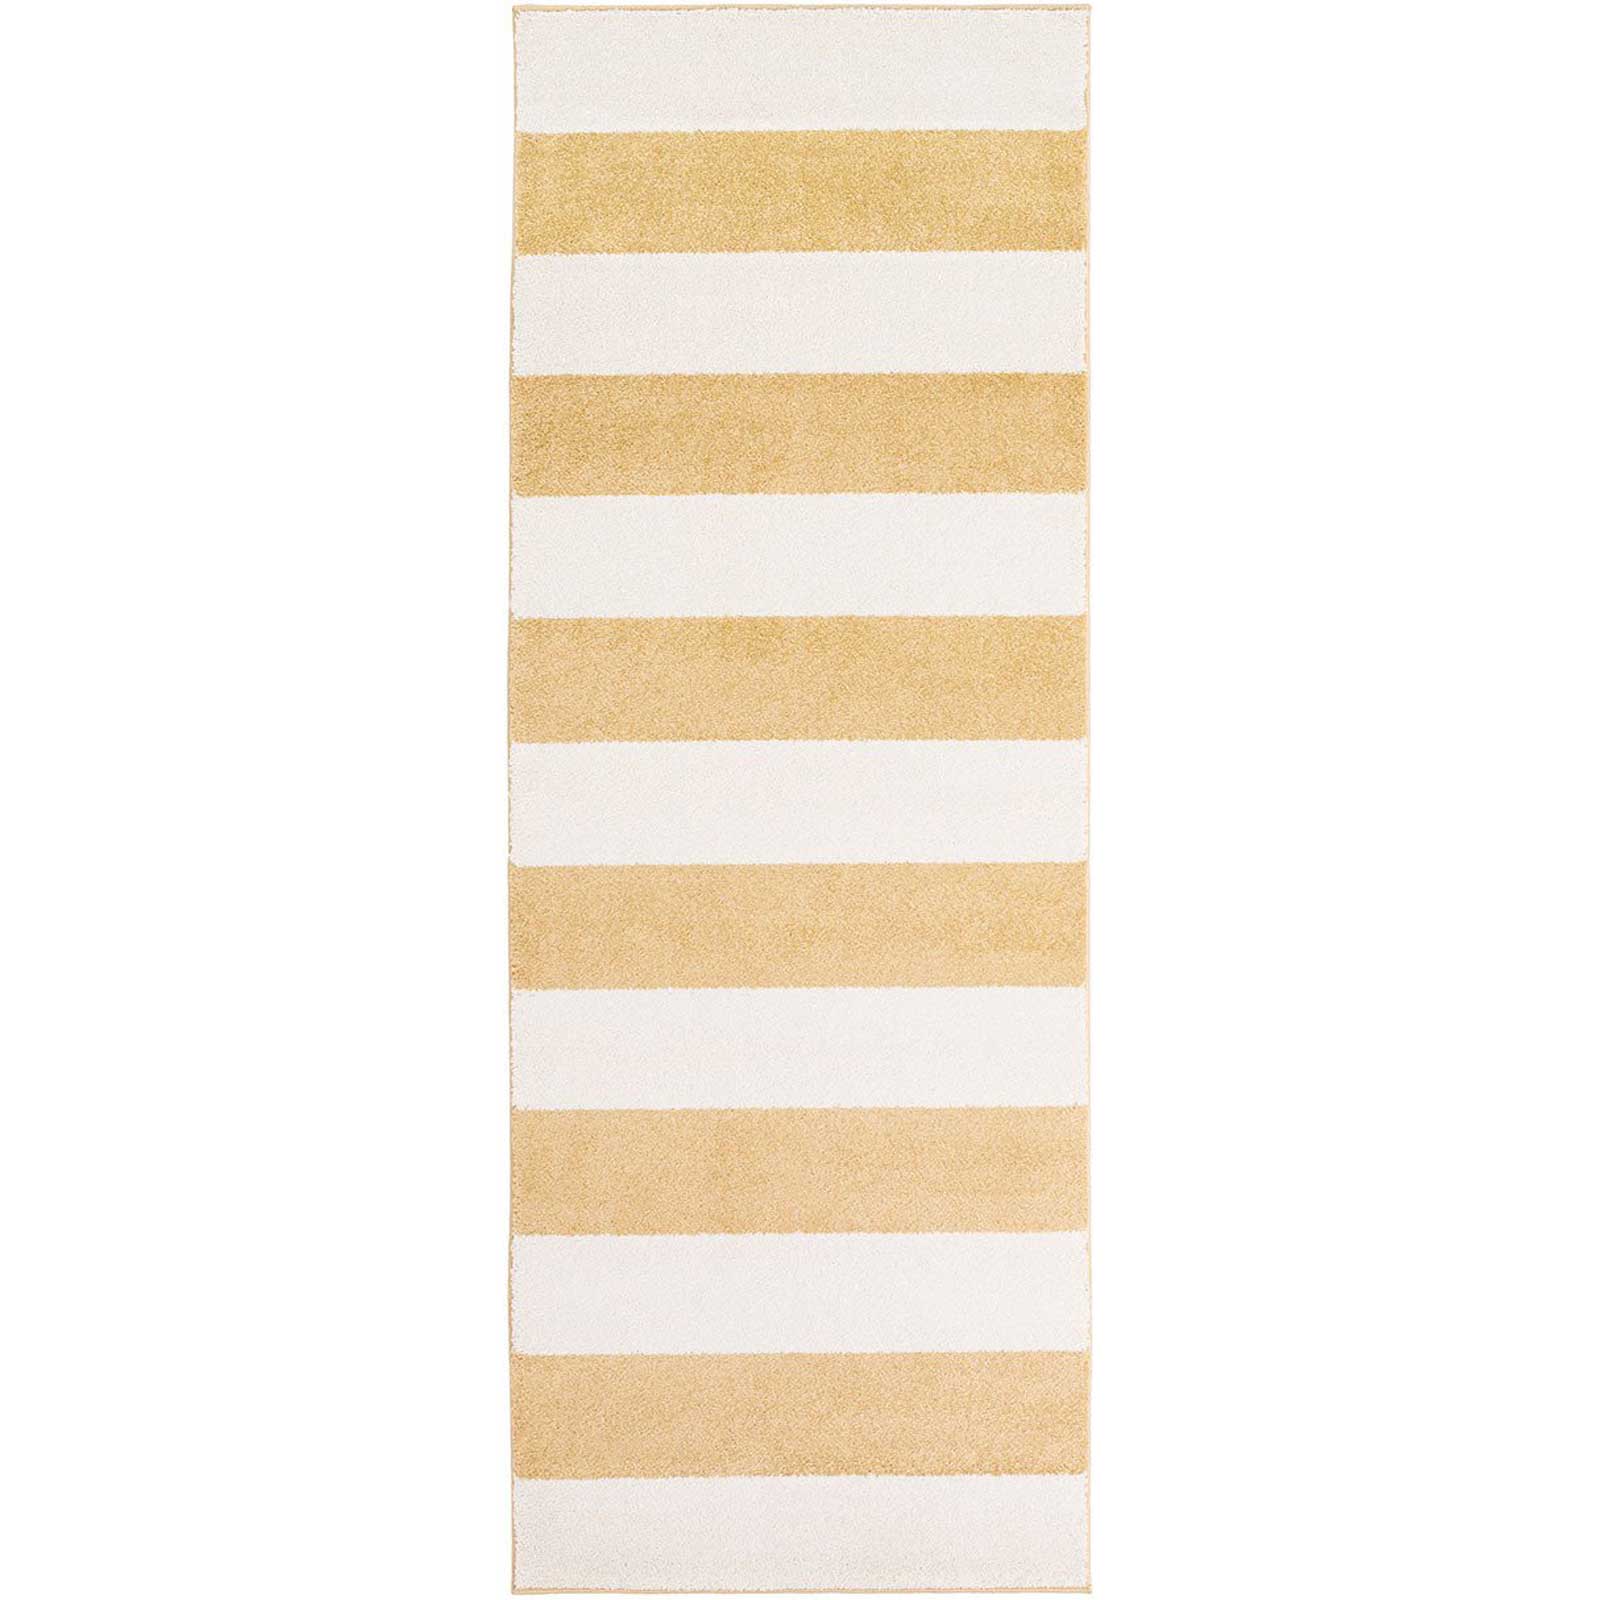 Horizon Striped Ivory/Gold Runner Rug